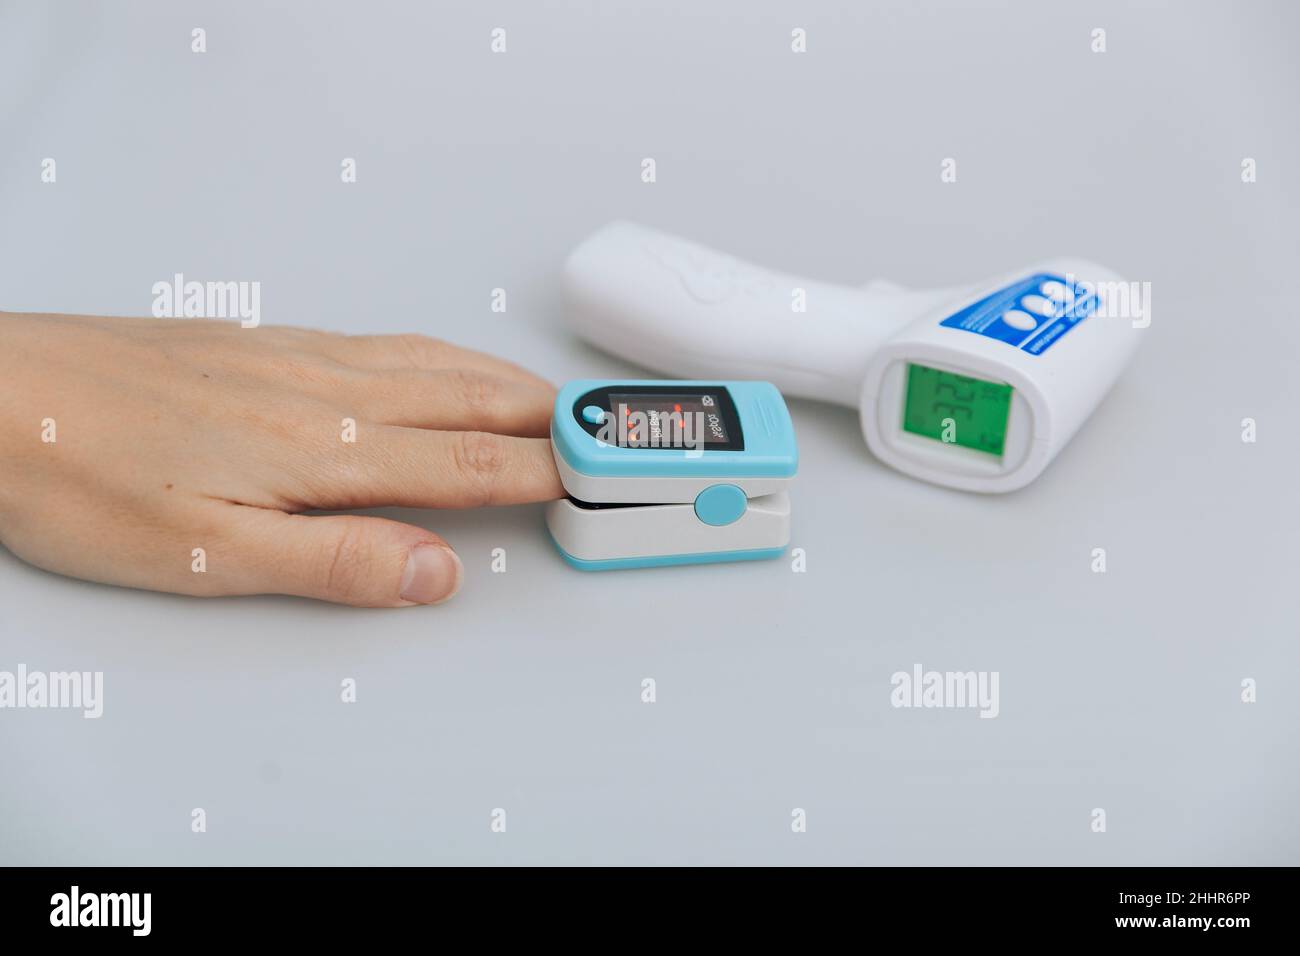 Pulsoximeter und Thermometerpistole auf weißem Hintergrund. Messung der Sauerstoffsättigung, der Pulsfrequenz und des Sauerstoffgehalts. Isometrisches Infrarot-Thermometer Stockfoto